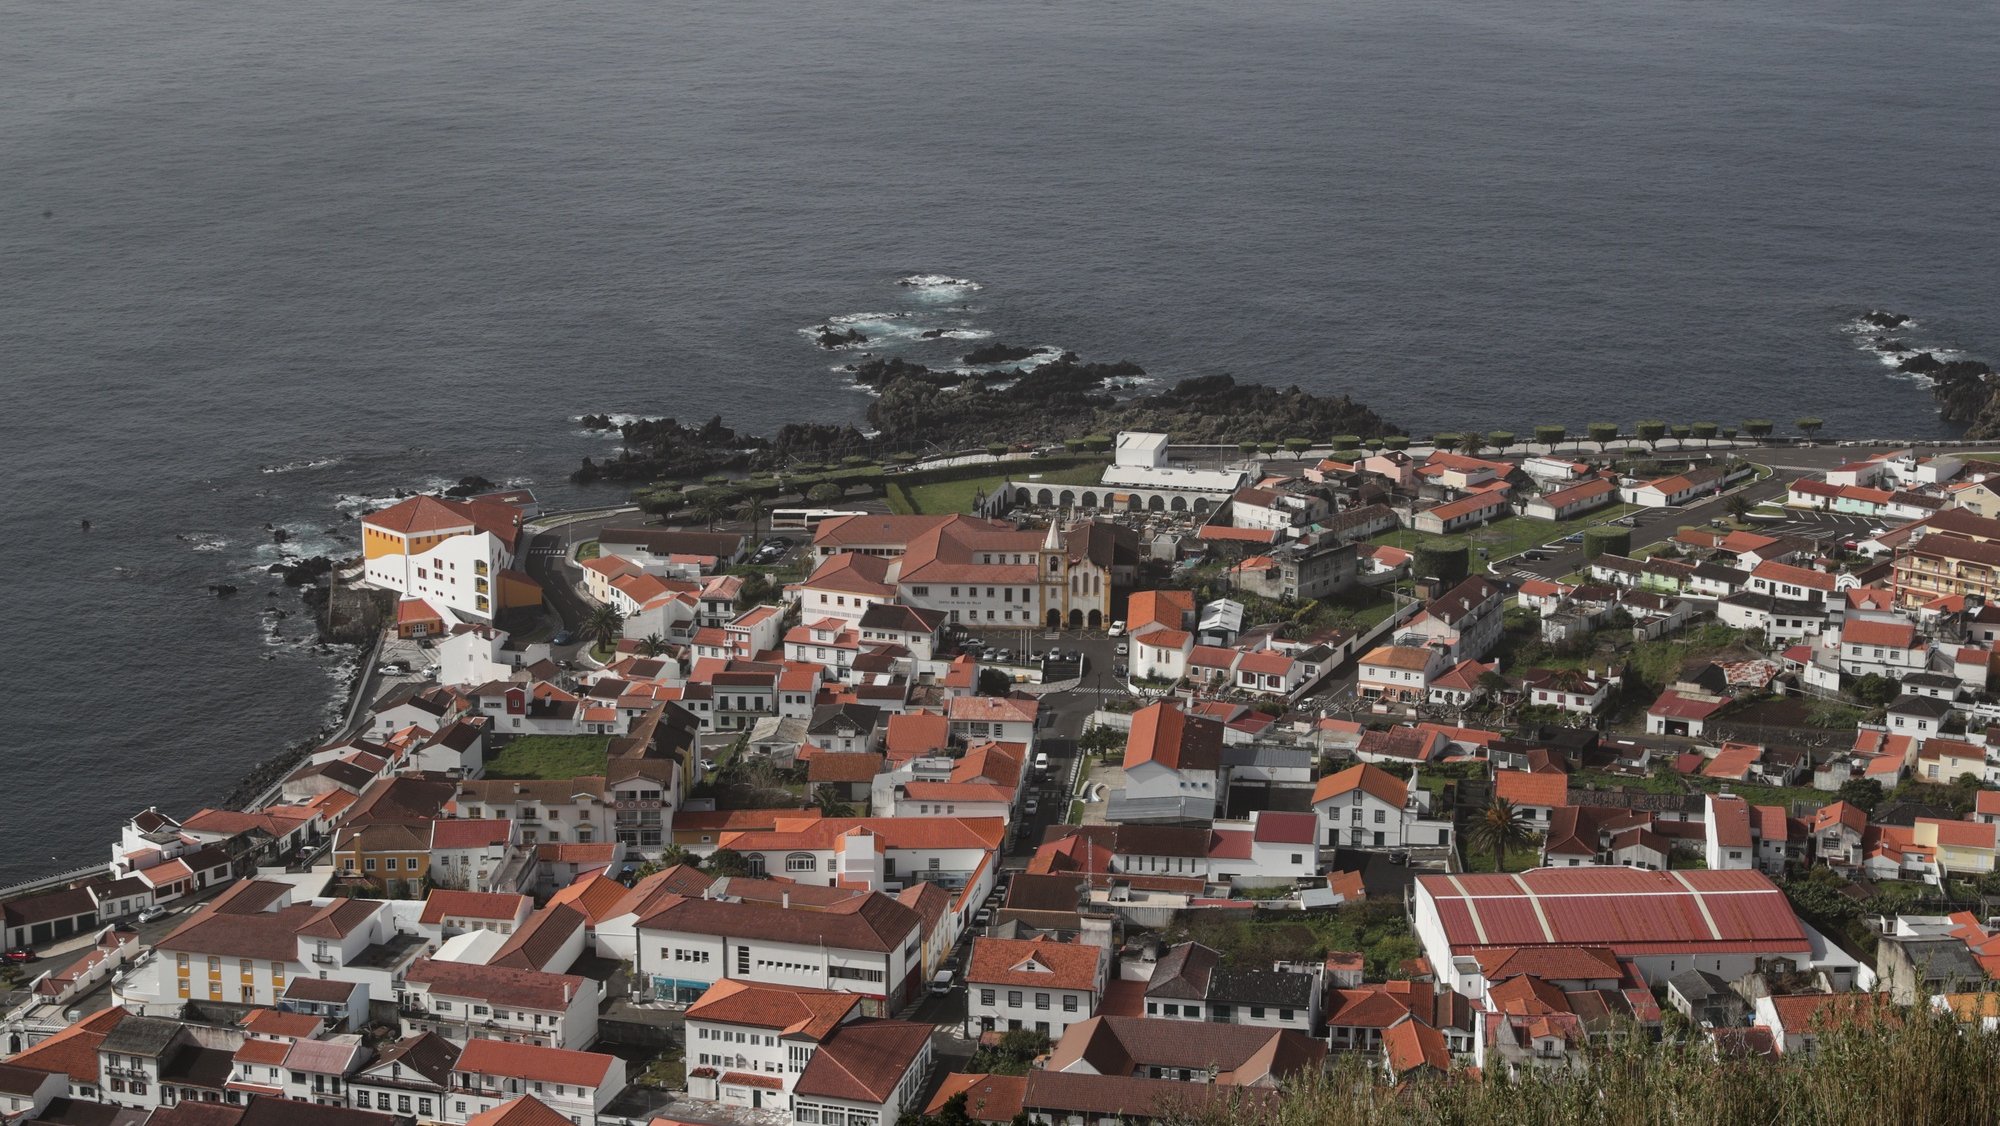 Vista geral da cidade de Velas, ilha de São Jorge, Açores, Portugal. TIAGO PETINGA/LUSA